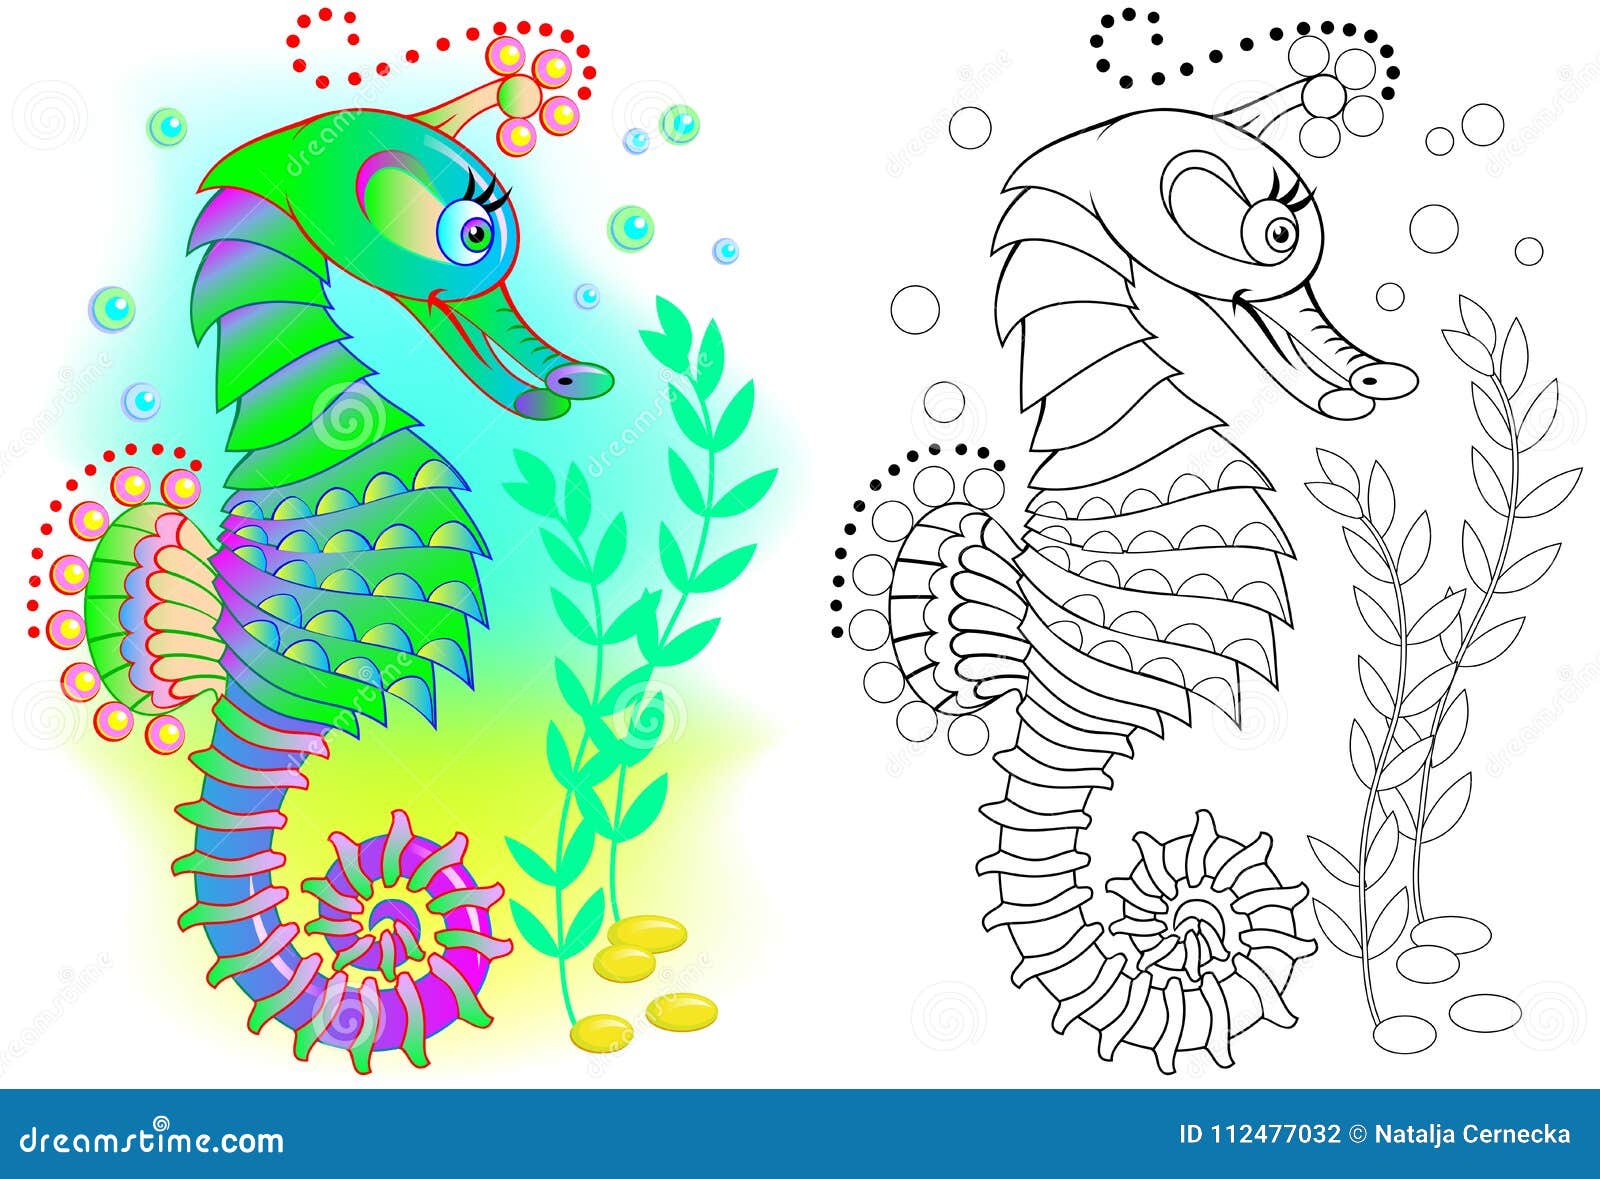 Desenhos de Cavalo-marinho para Colorir - Tudo Para Colorir